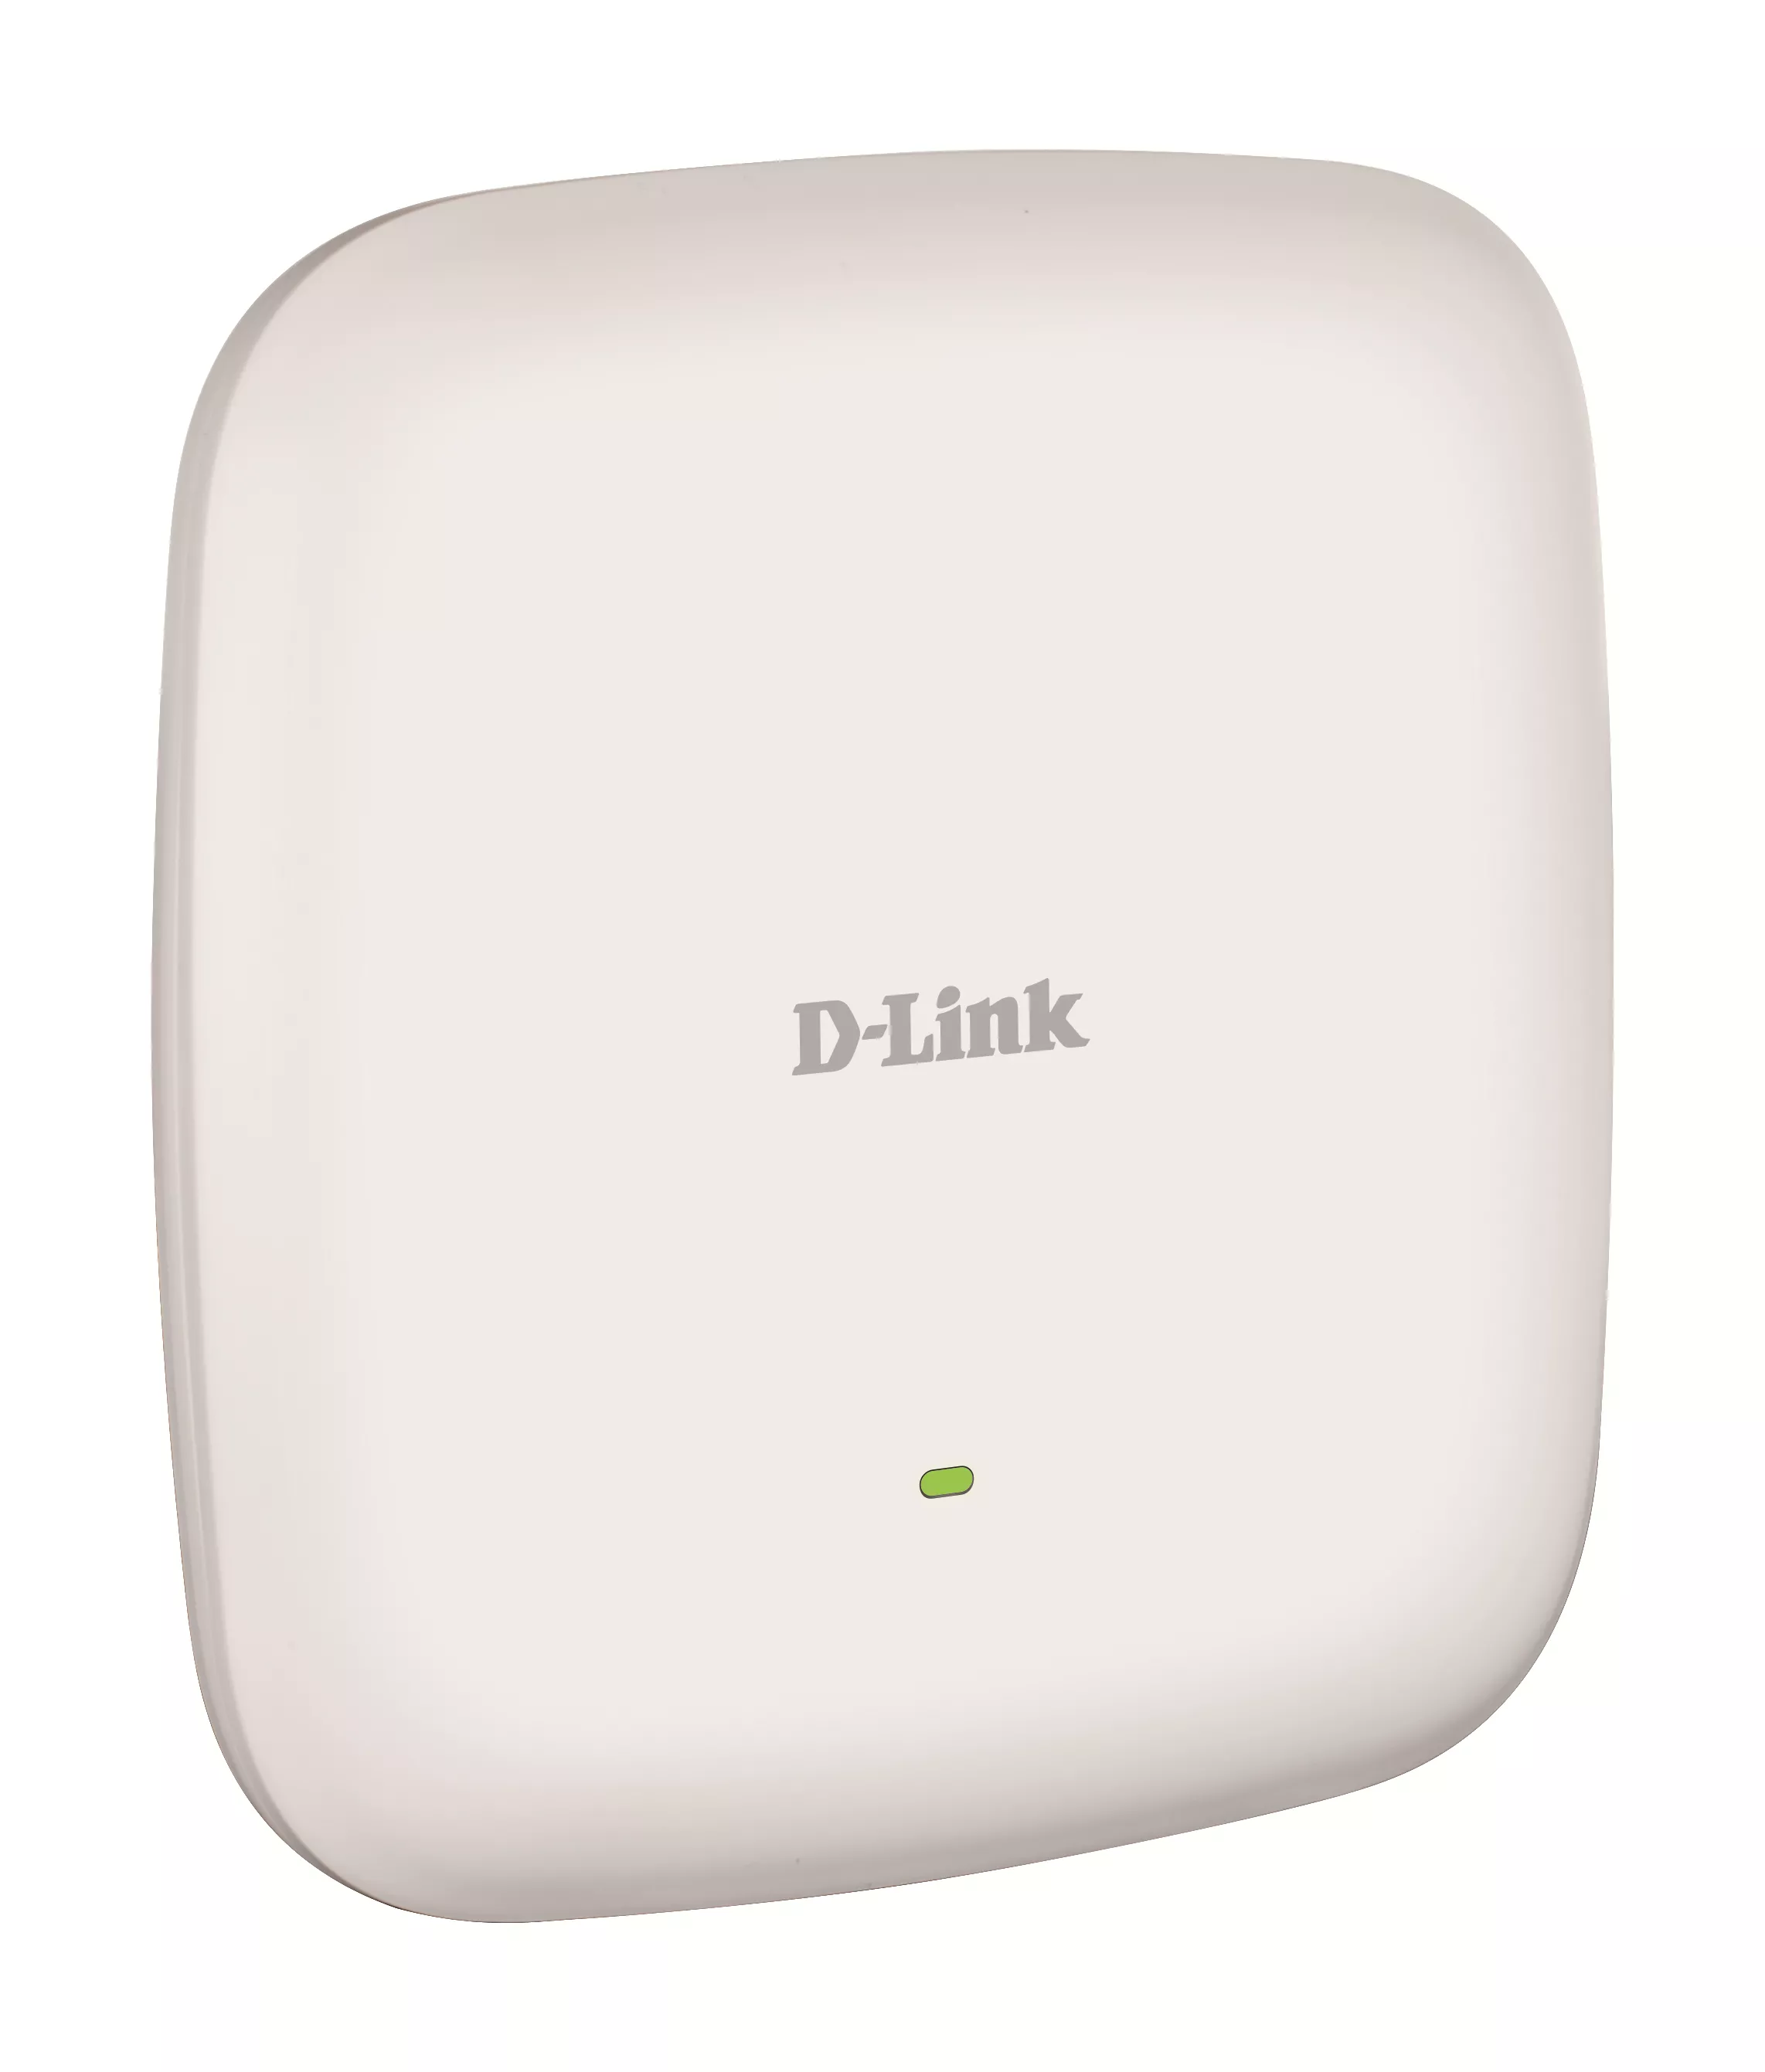 Vente D-LINK Unified AC1300 Wave 2 Dual Band Outdoor D-Link au meilleur prix - visuel 2